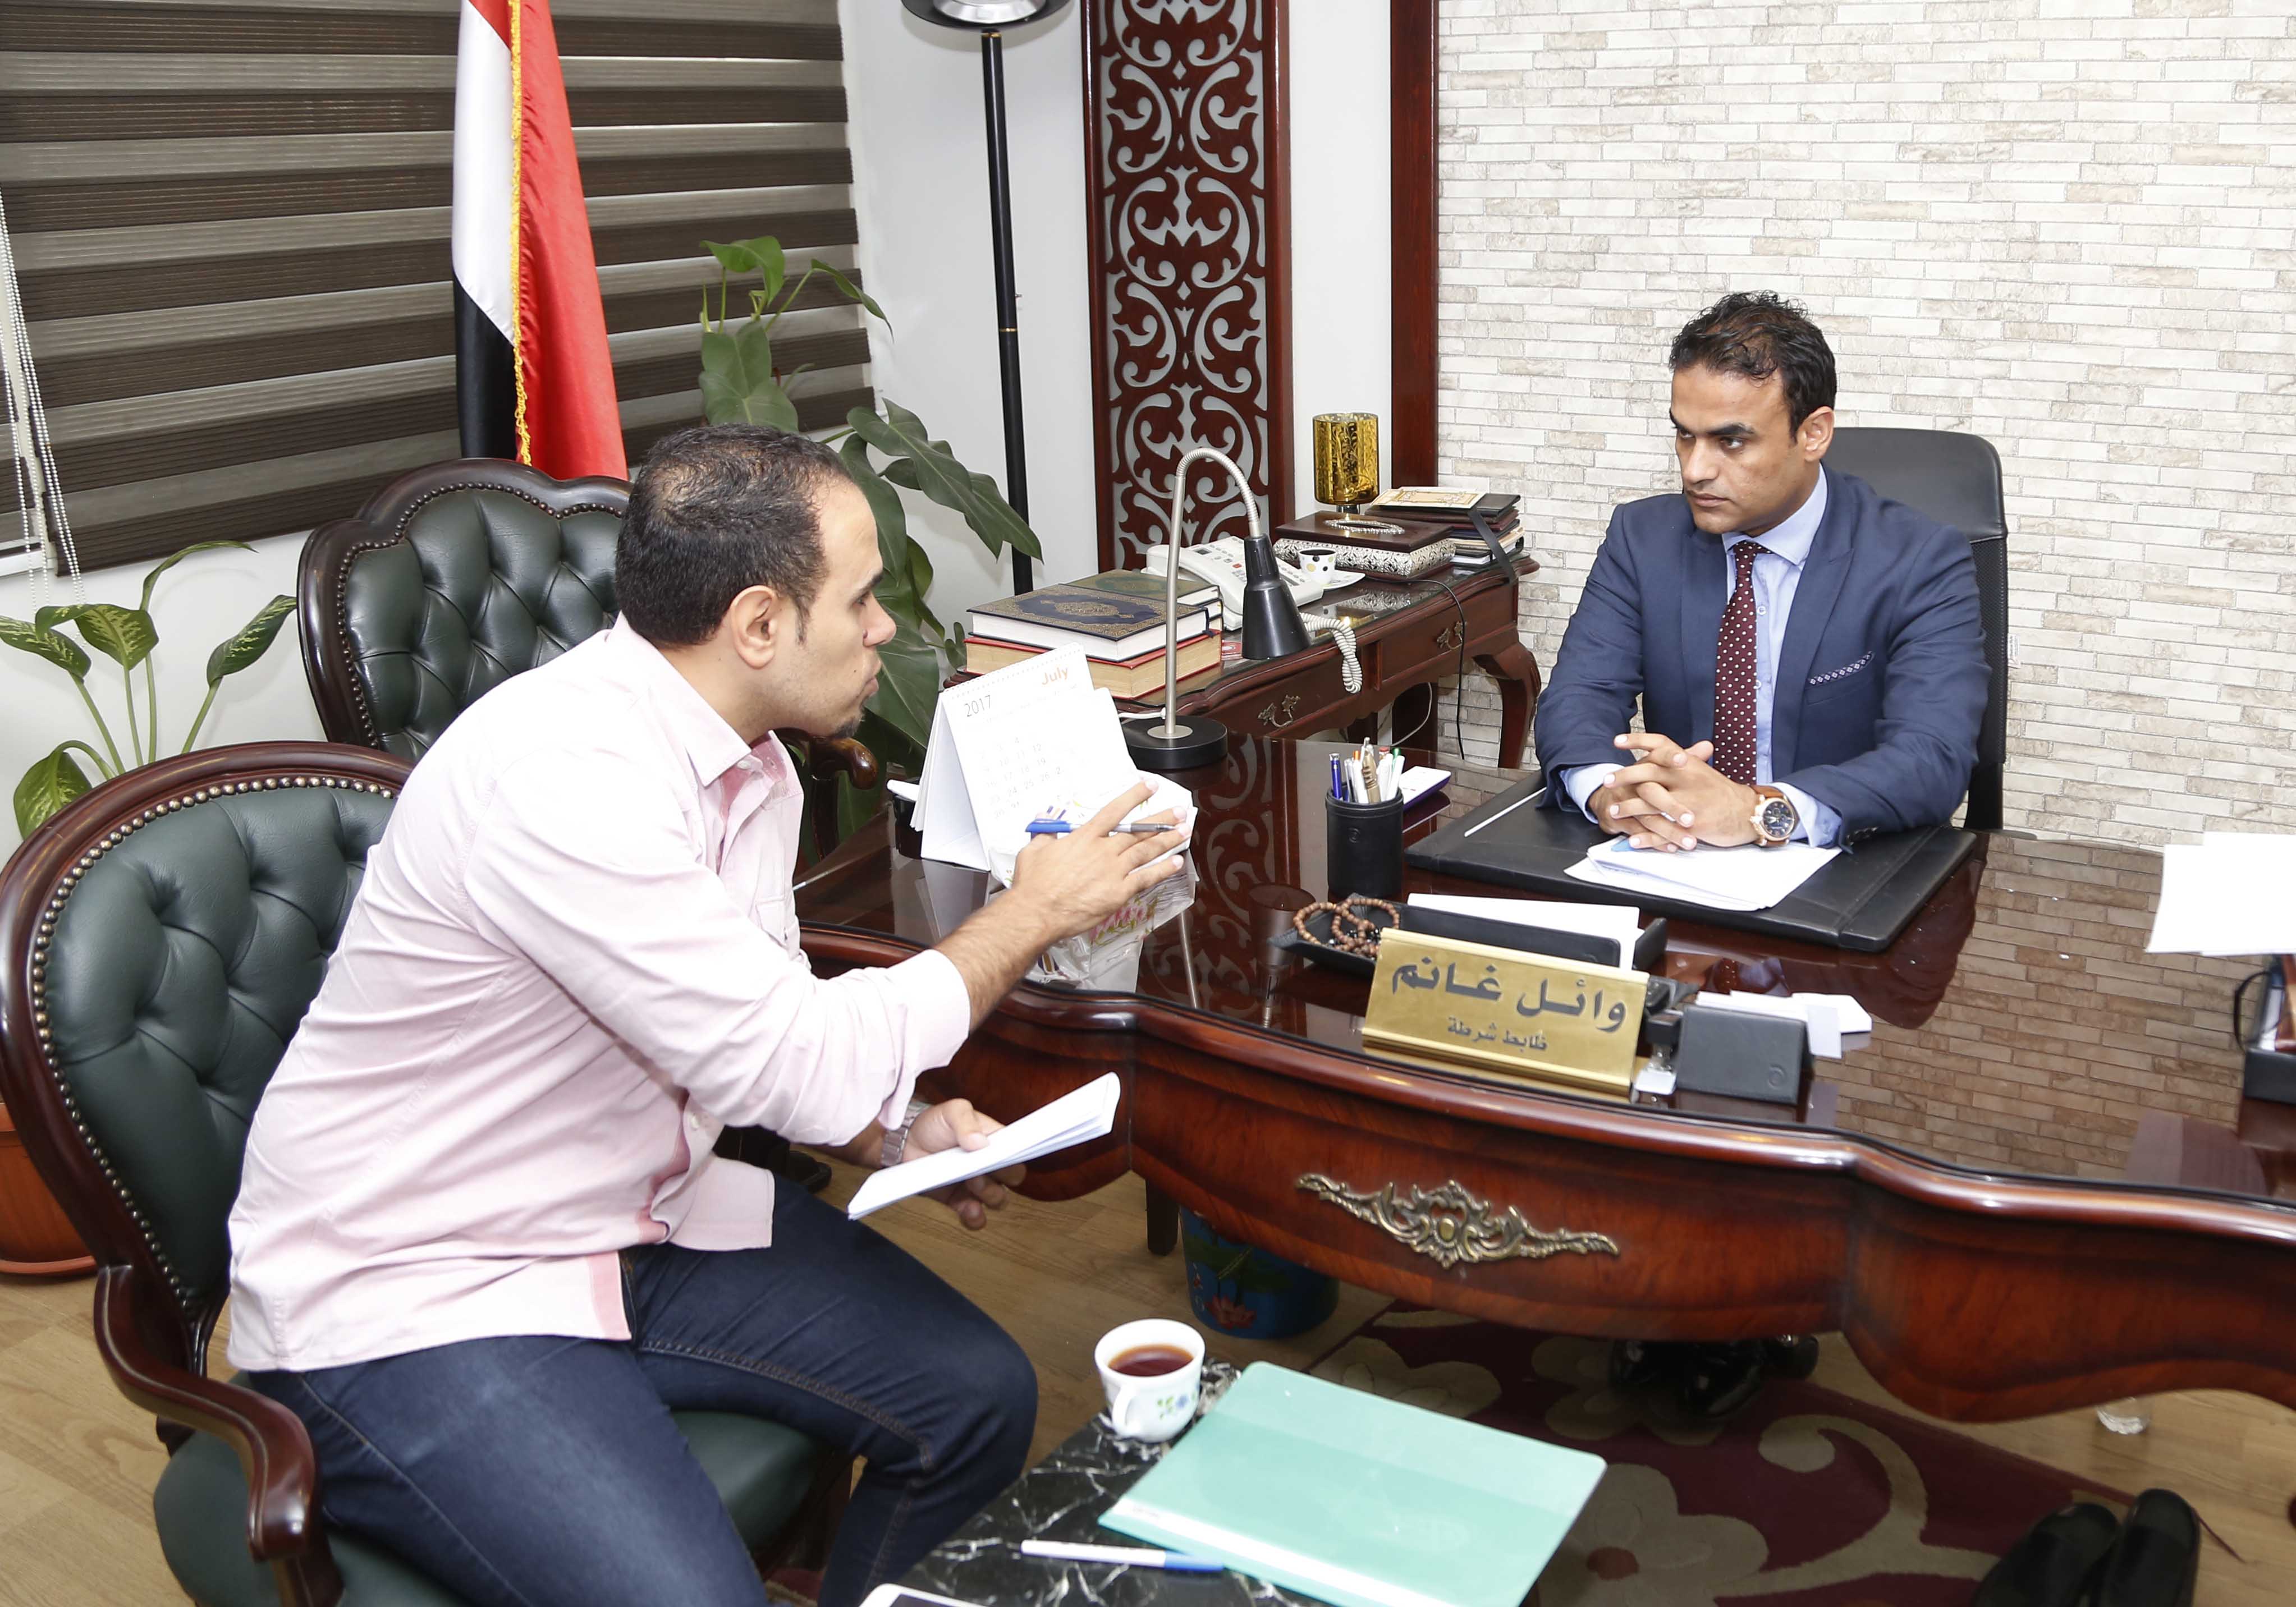 رئيس مباحث مدينة نصر يتحدث مع الزميل إبراهيم أحمد